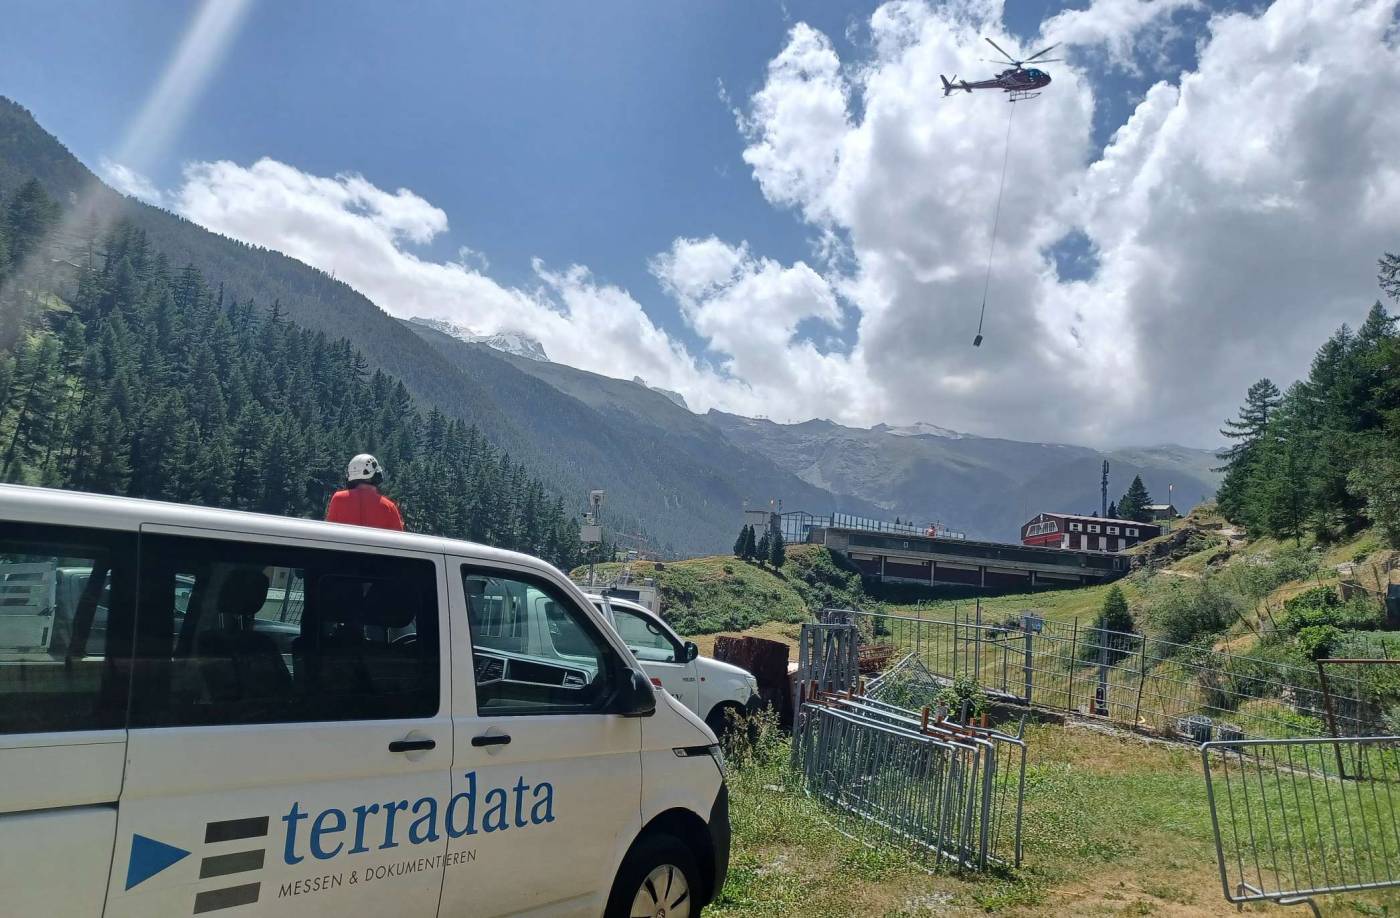 Bohrlochscanning und -vermessung für neuen Bahntunnel Täsch-Zermatt/VS, In 2 subhorizontalen Bohrungen von 30 m Tiefe:, Optisches (OPTV) und akustisches Bohrlochscanning (BHTV), Bohrlochverlaufsmessungen